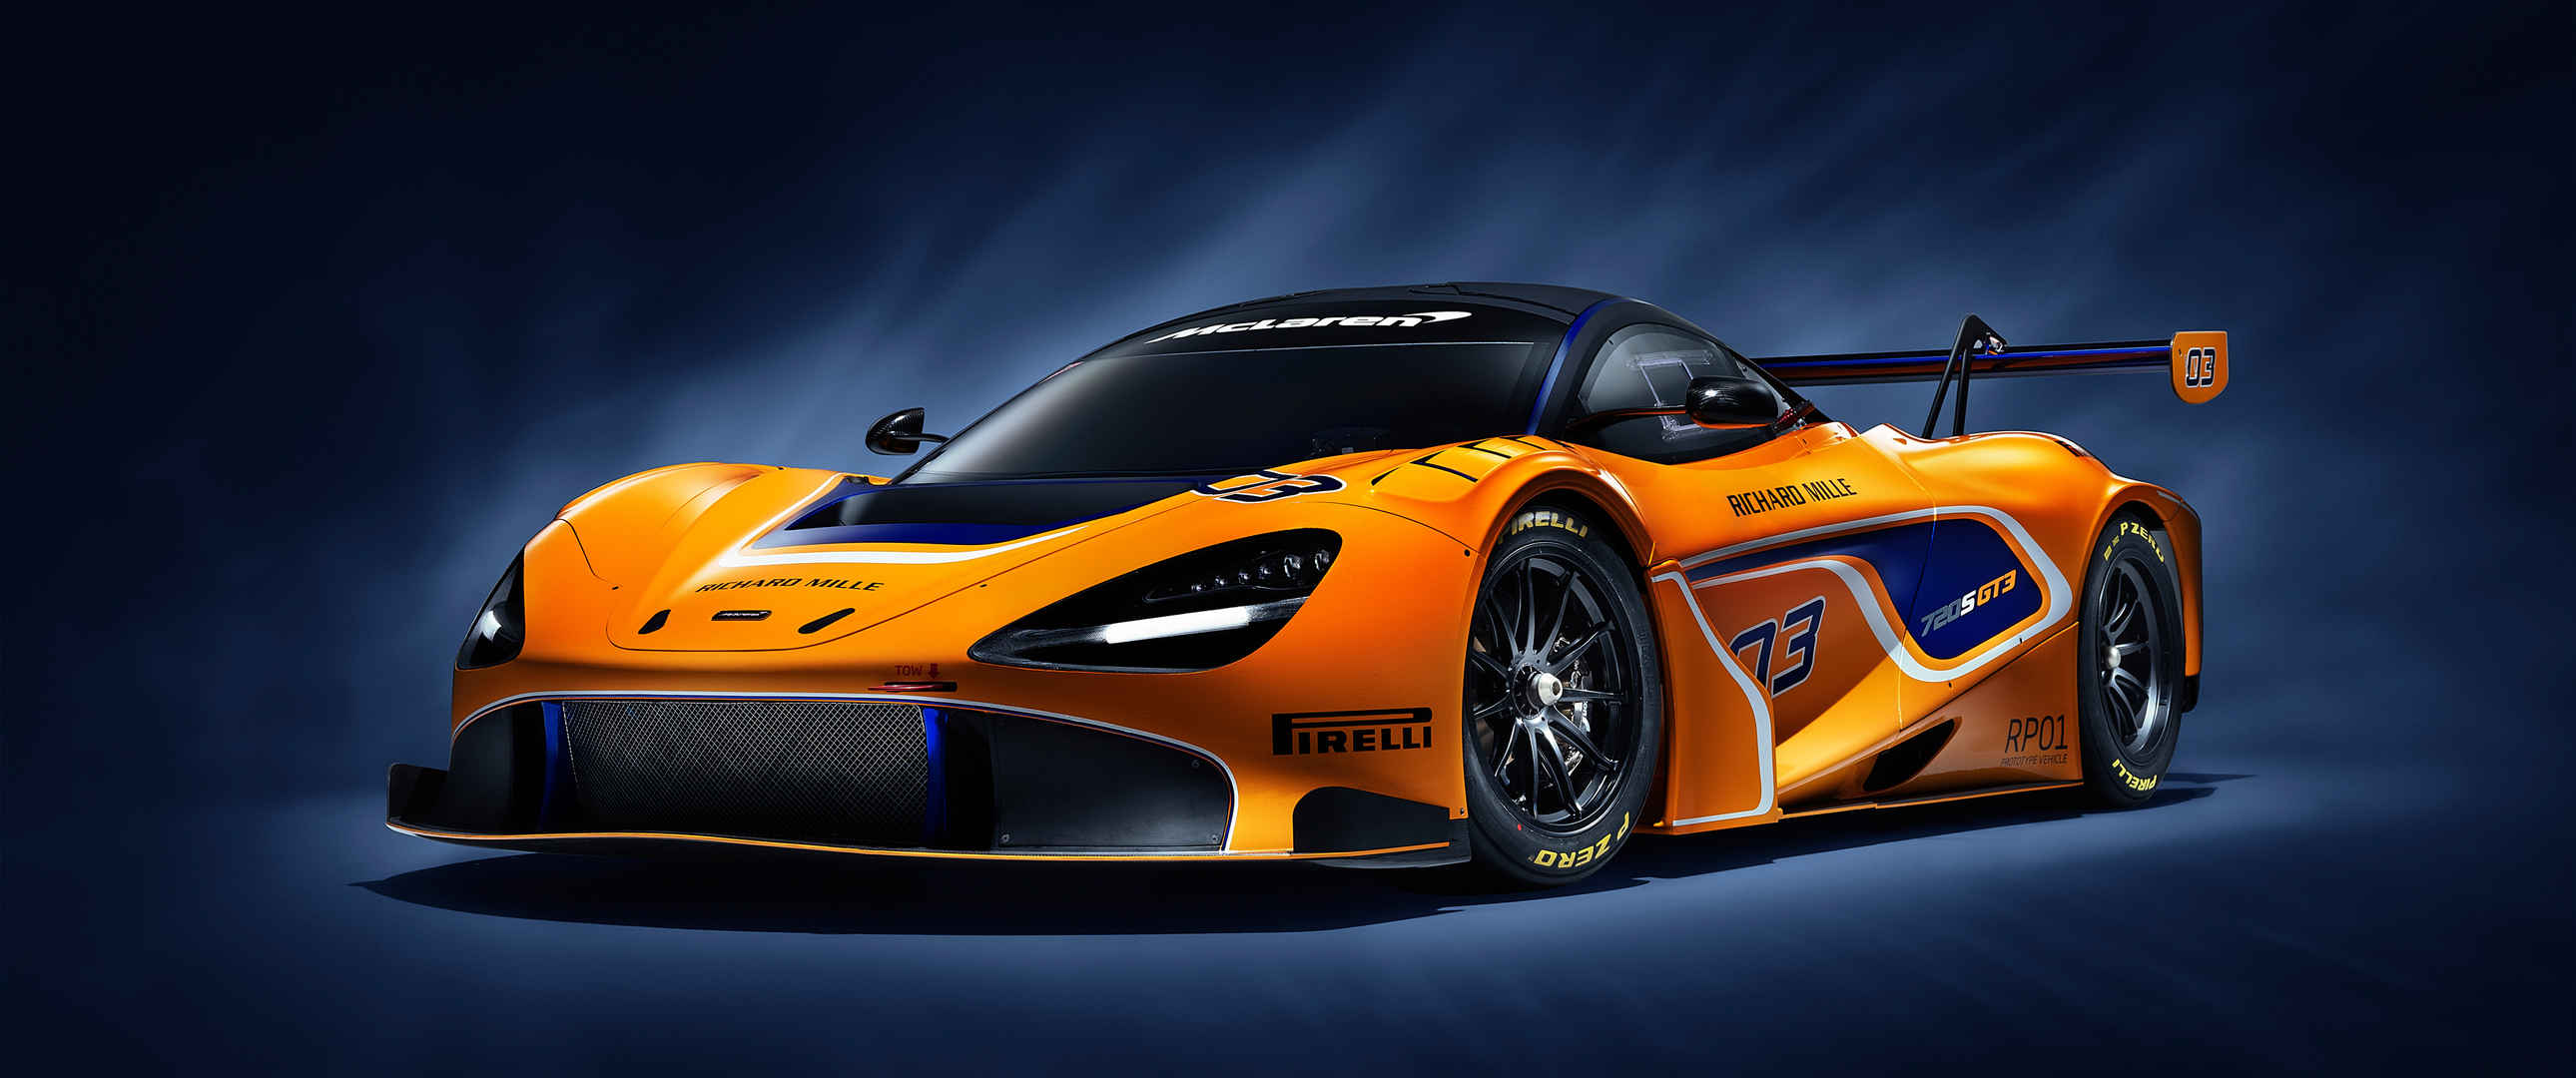 迈凯伦McLaren 720S GT3橙色跑车3440x1440图片